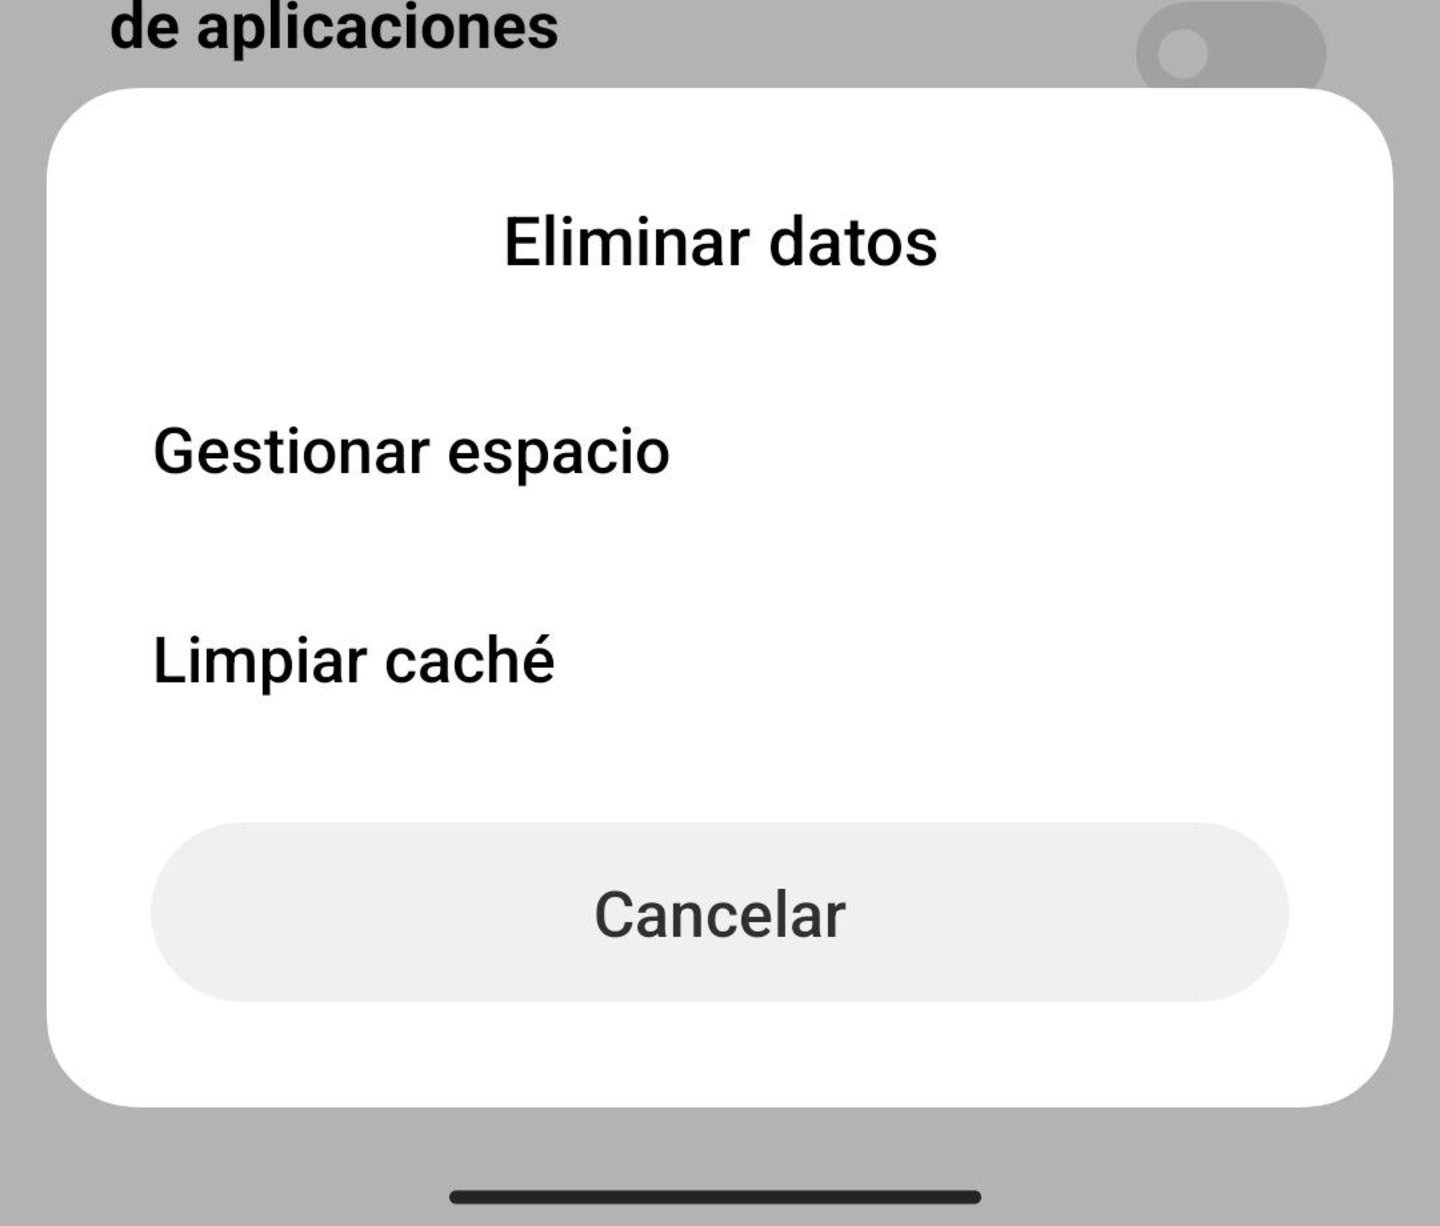 Comment libérer de l'espace sur votre téléphone Android sans supprimer d'application